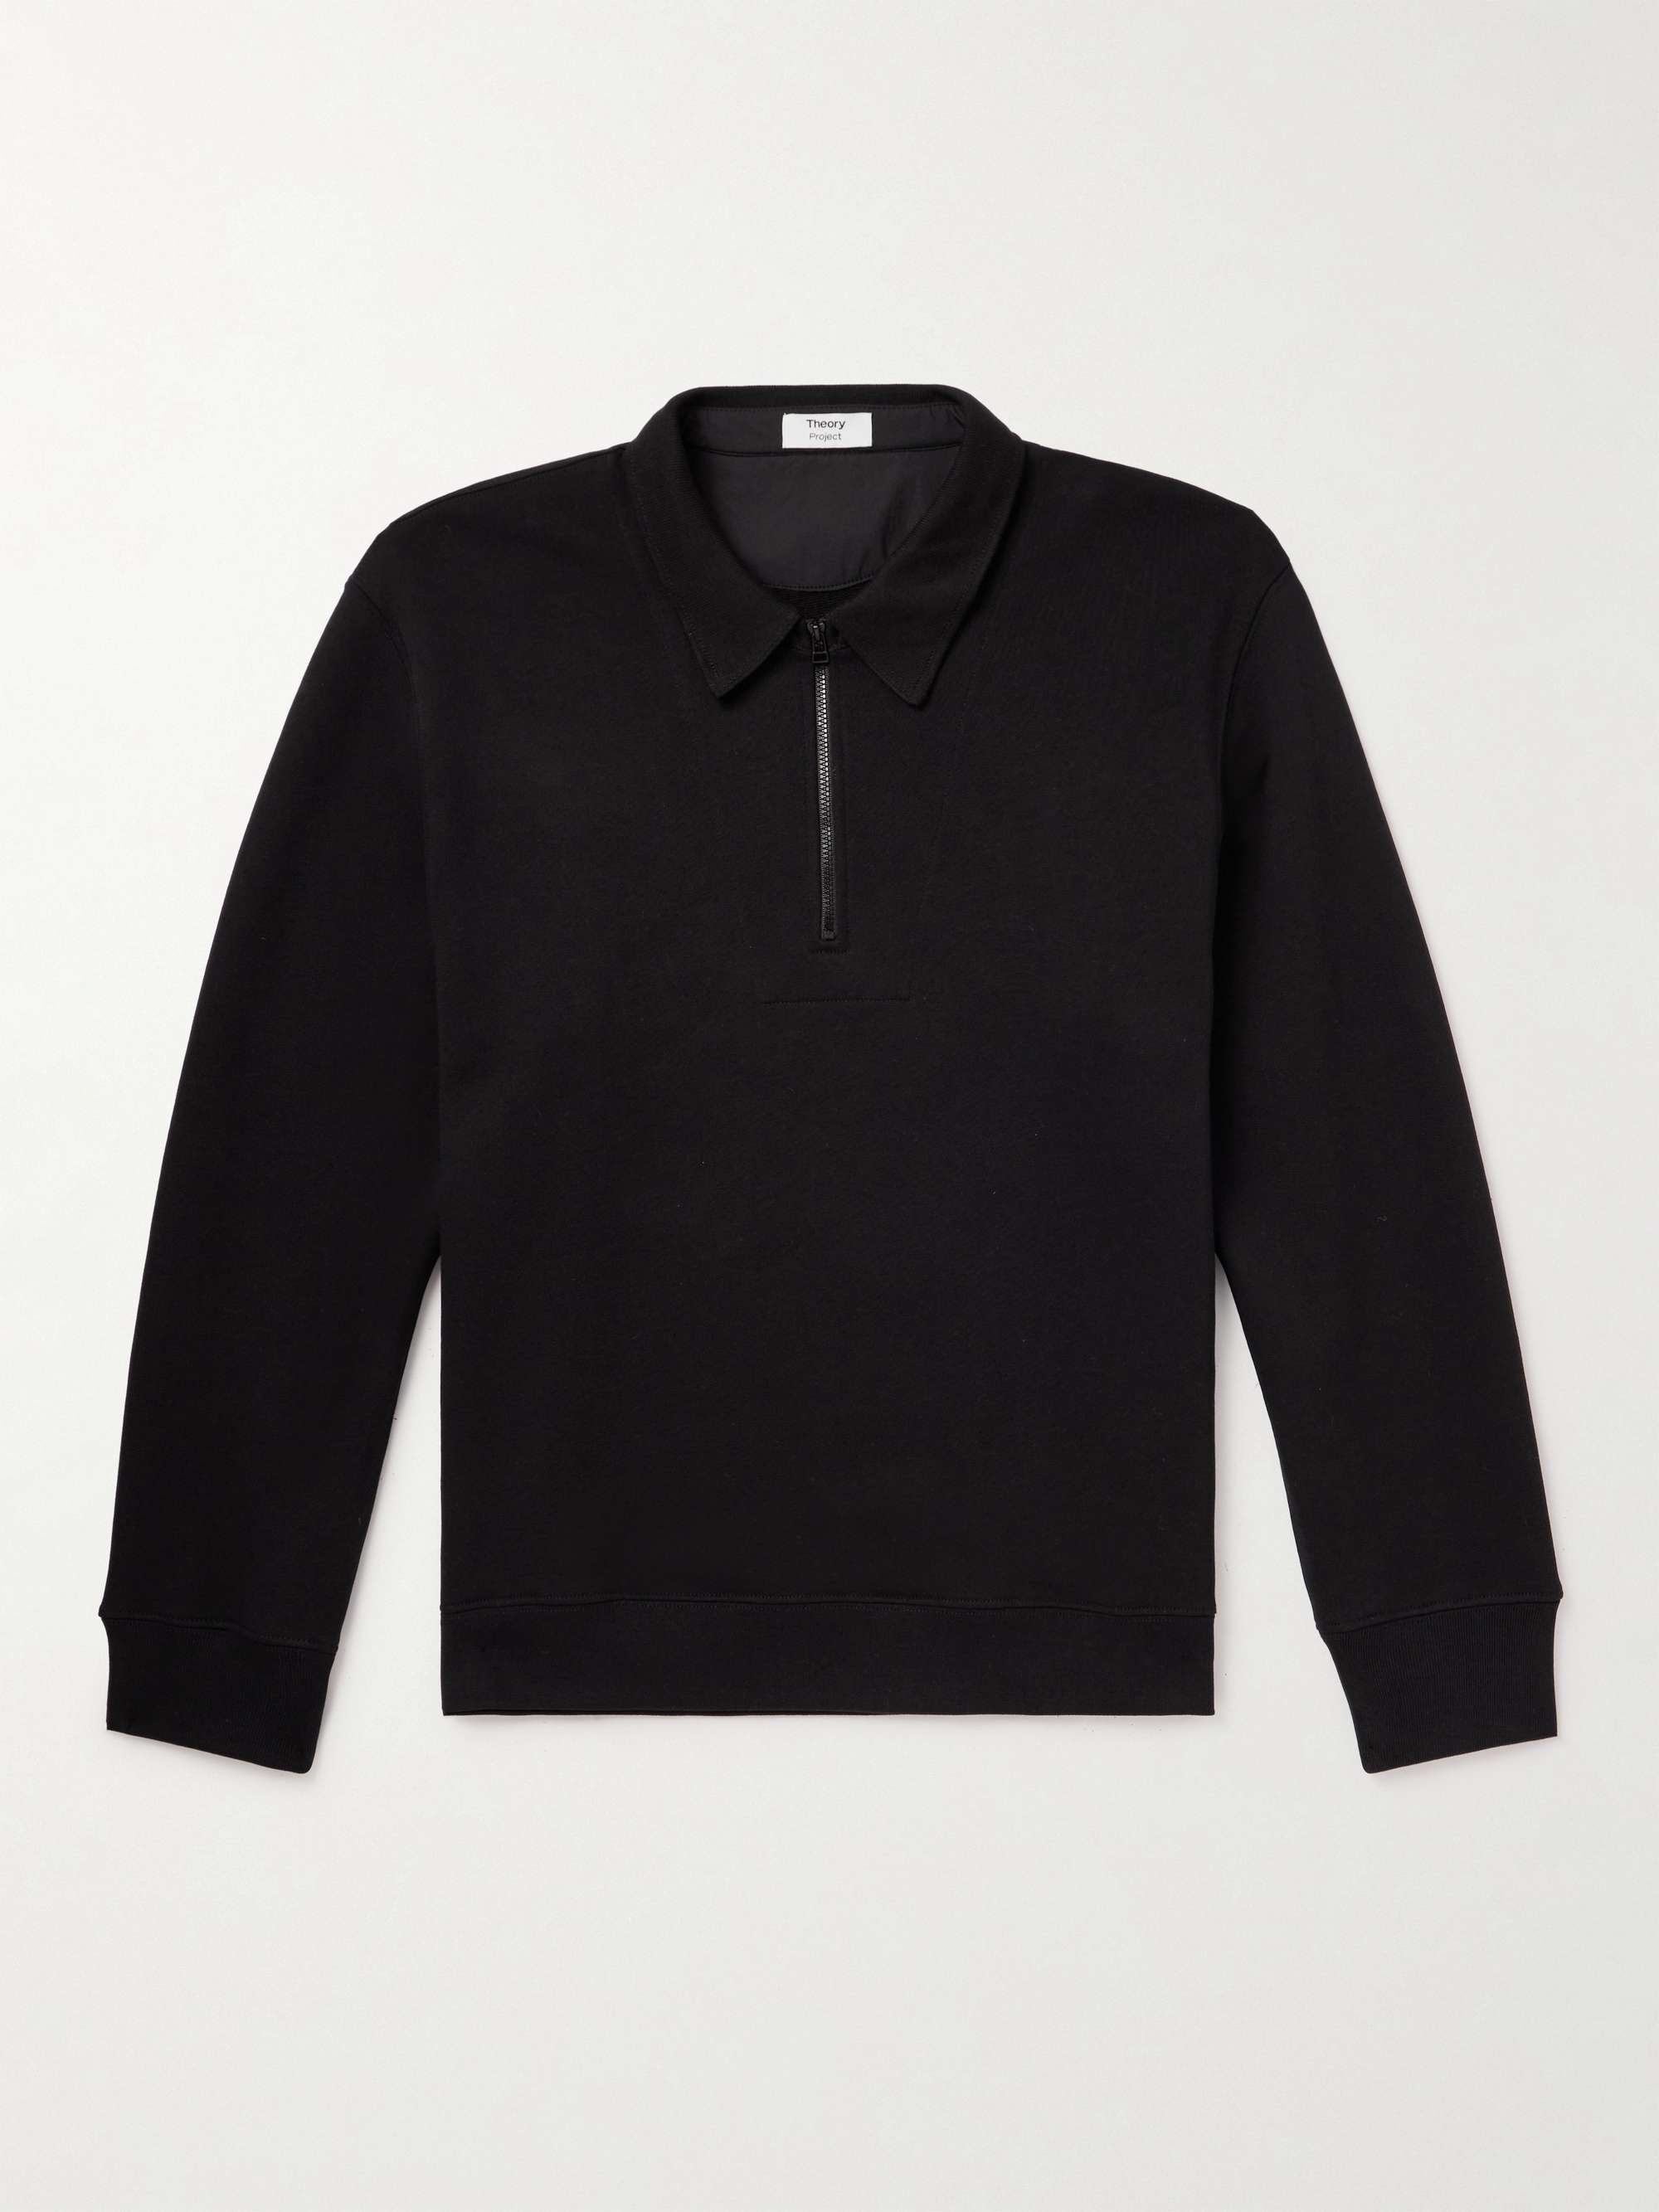 THEORY + Lucas Ossendrijver Cotton-Jersey Half-Zip Sweatshirt for